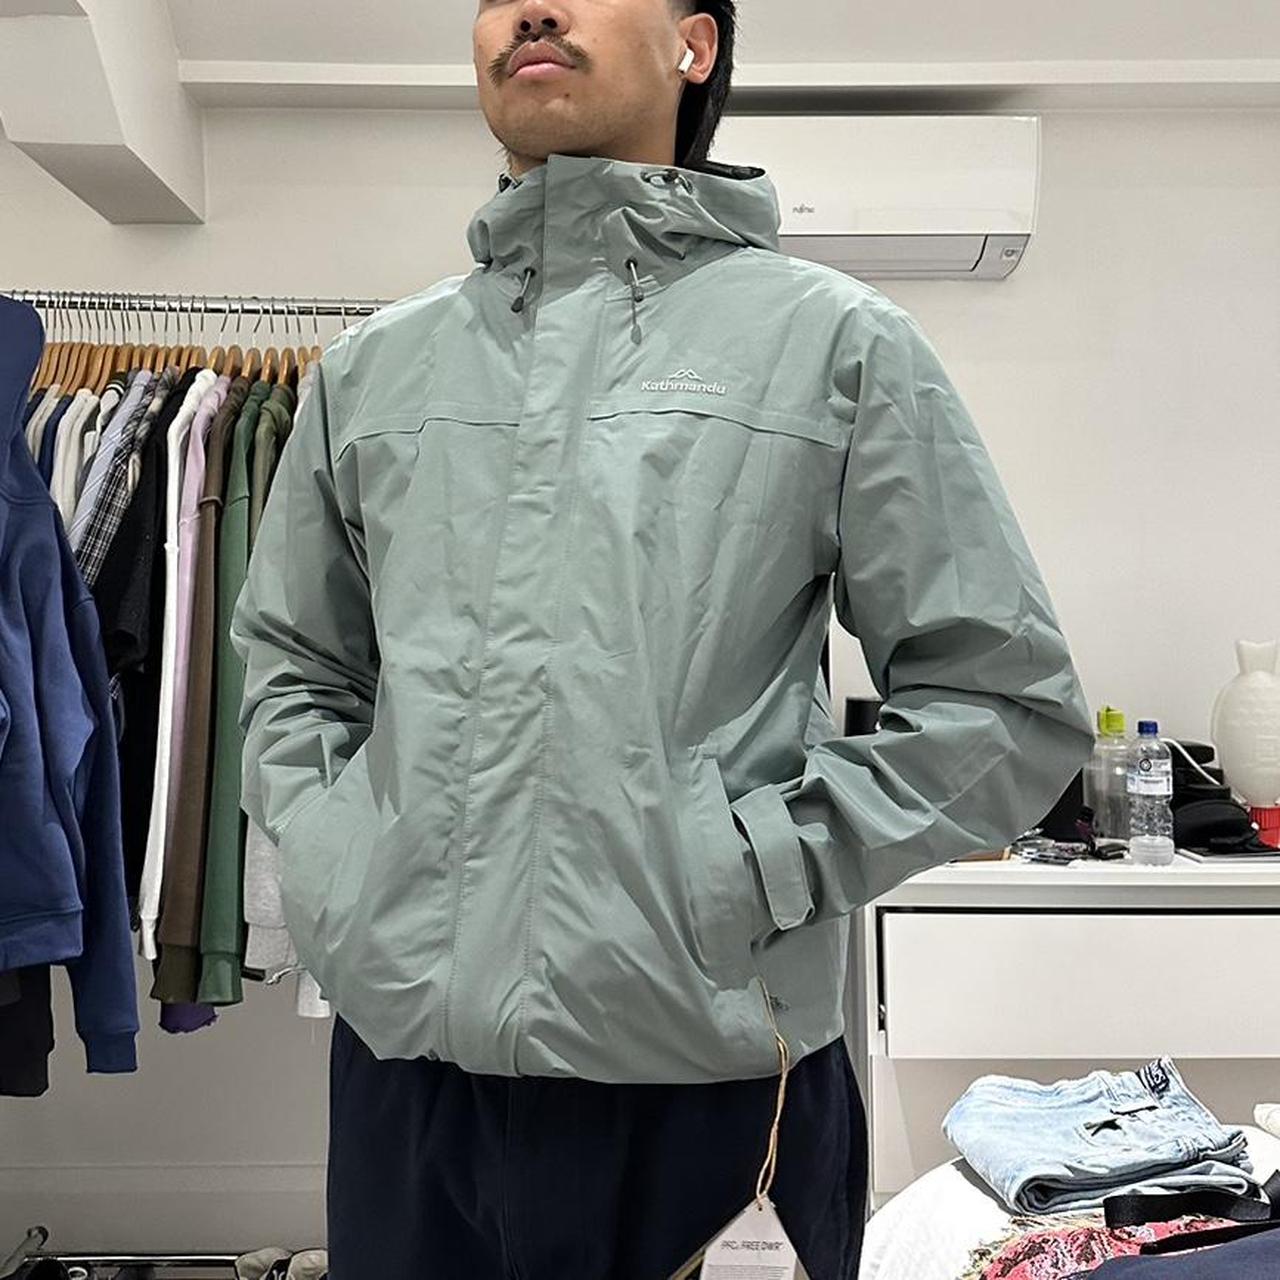 Kathmandu goretex mint jacket Size S fits M... - Depop